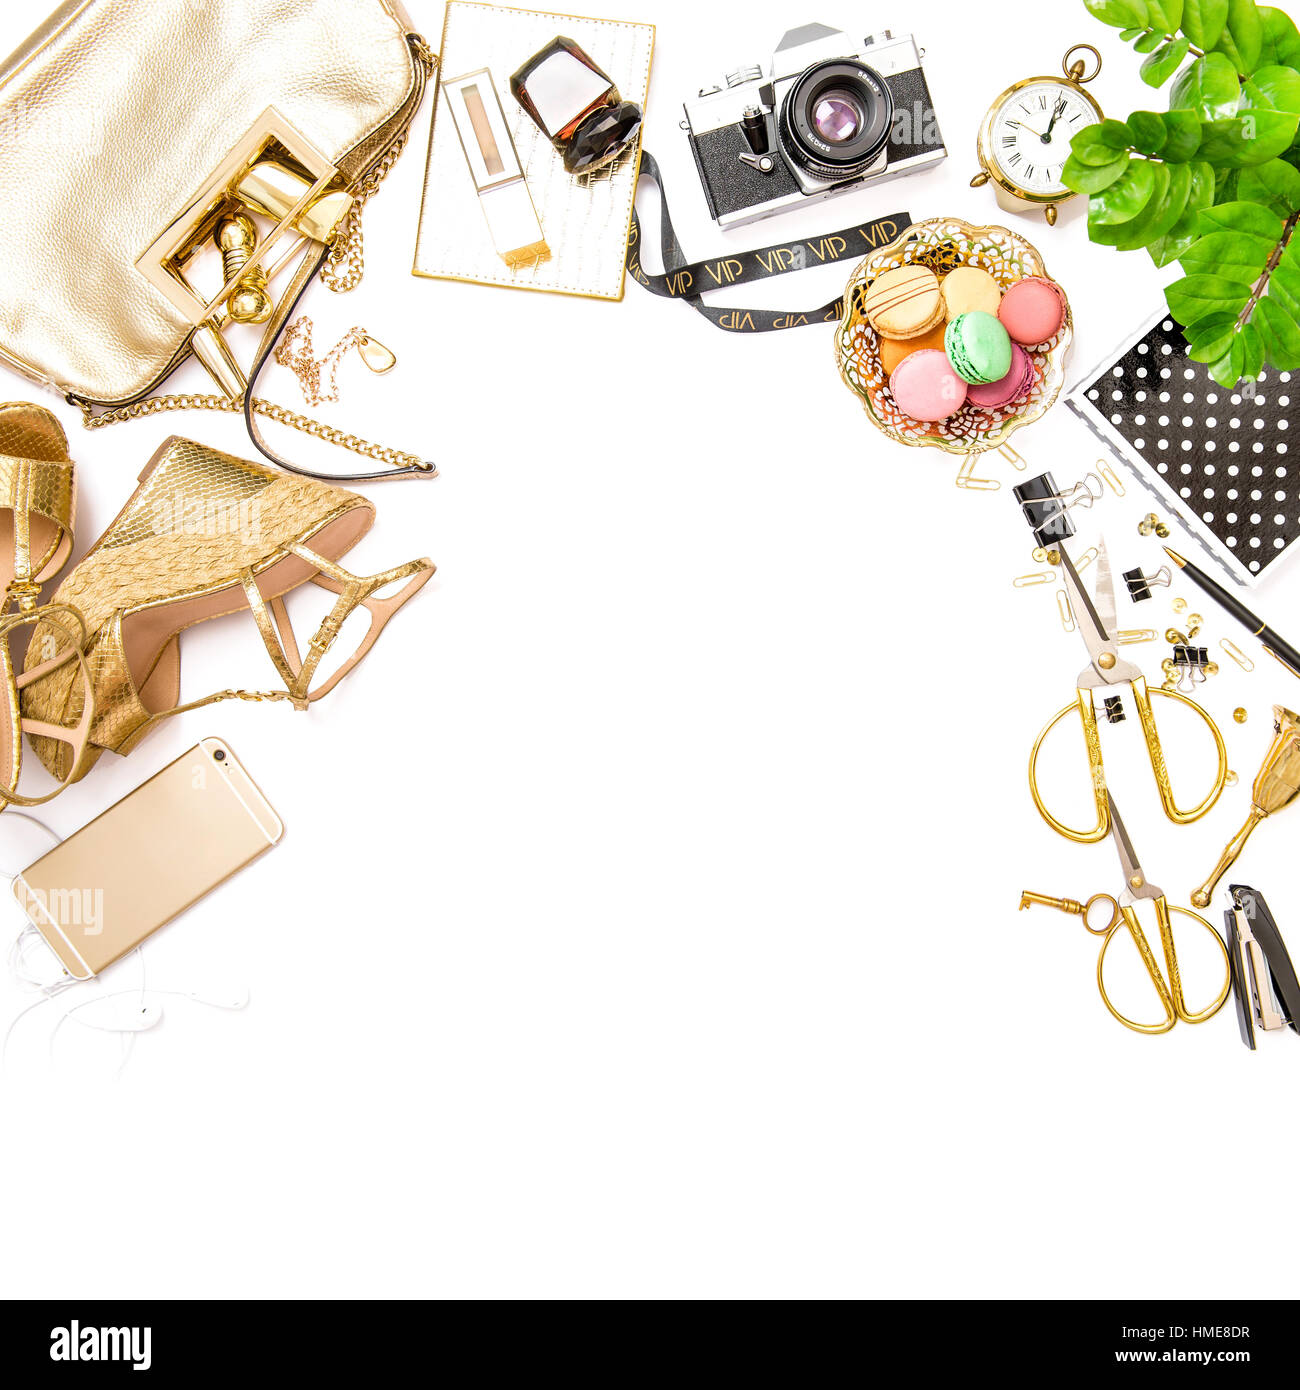 Mode flach legen für social Media Website. Feminine Accessoires, Tasche, Schuhe, Bürobedarf, Telefon, Grünpflanze auf weißen Tisch Hintergrund. Platz im Stockfoto